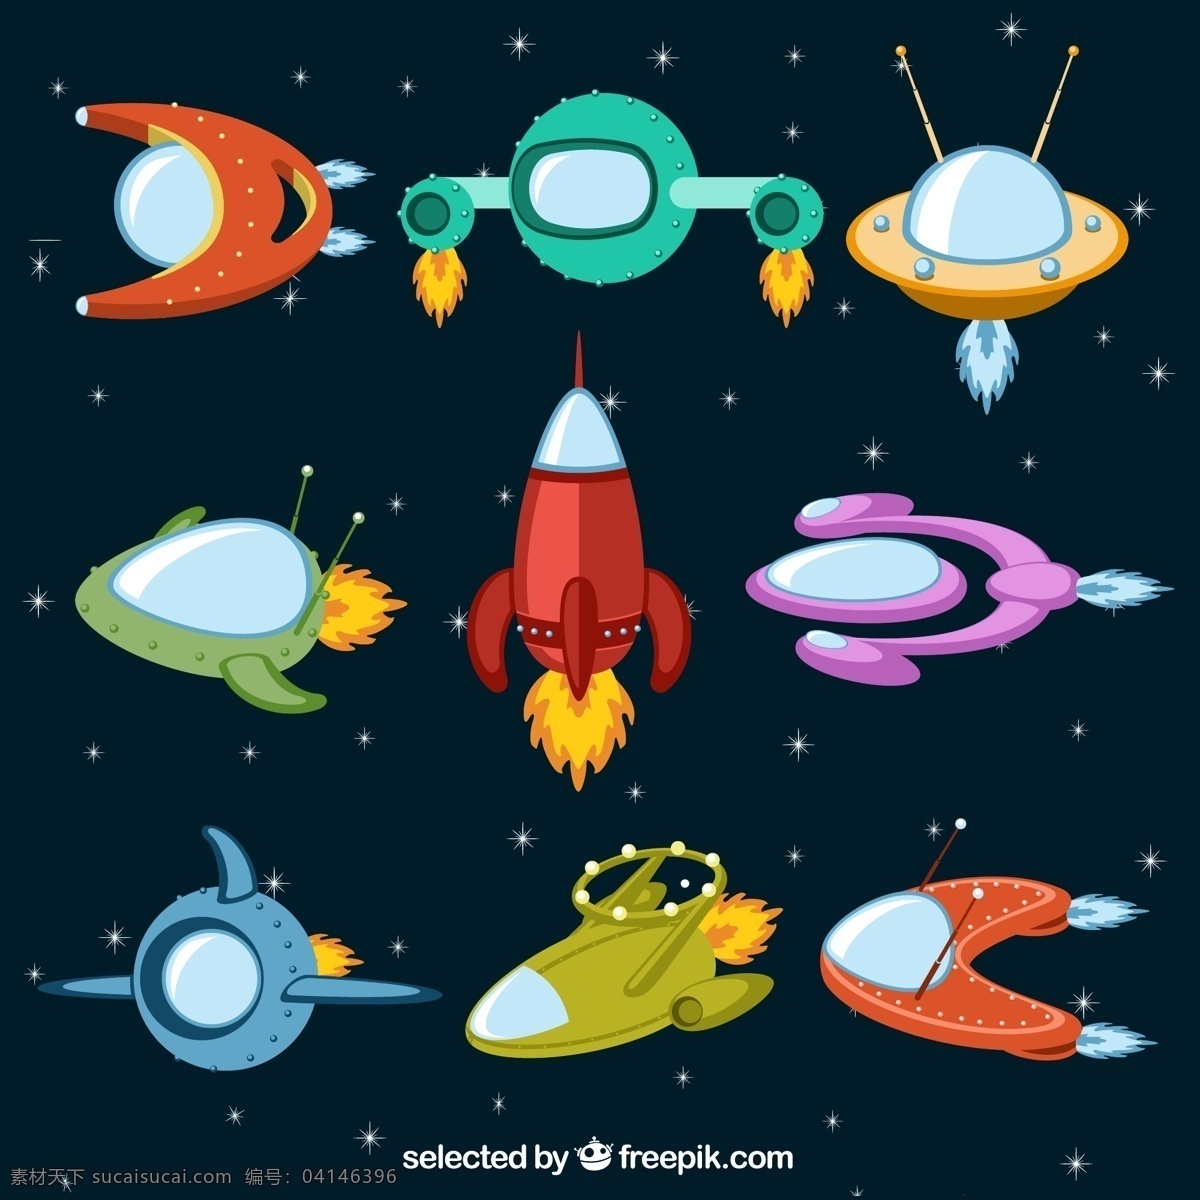 卡通宇宙飞船 矢量素材 太空 外星人 宇宙 火箭 宇宙飞船 太空船 太空探索 通话 卡通 未来科技 ai格式 现代科技 黑色